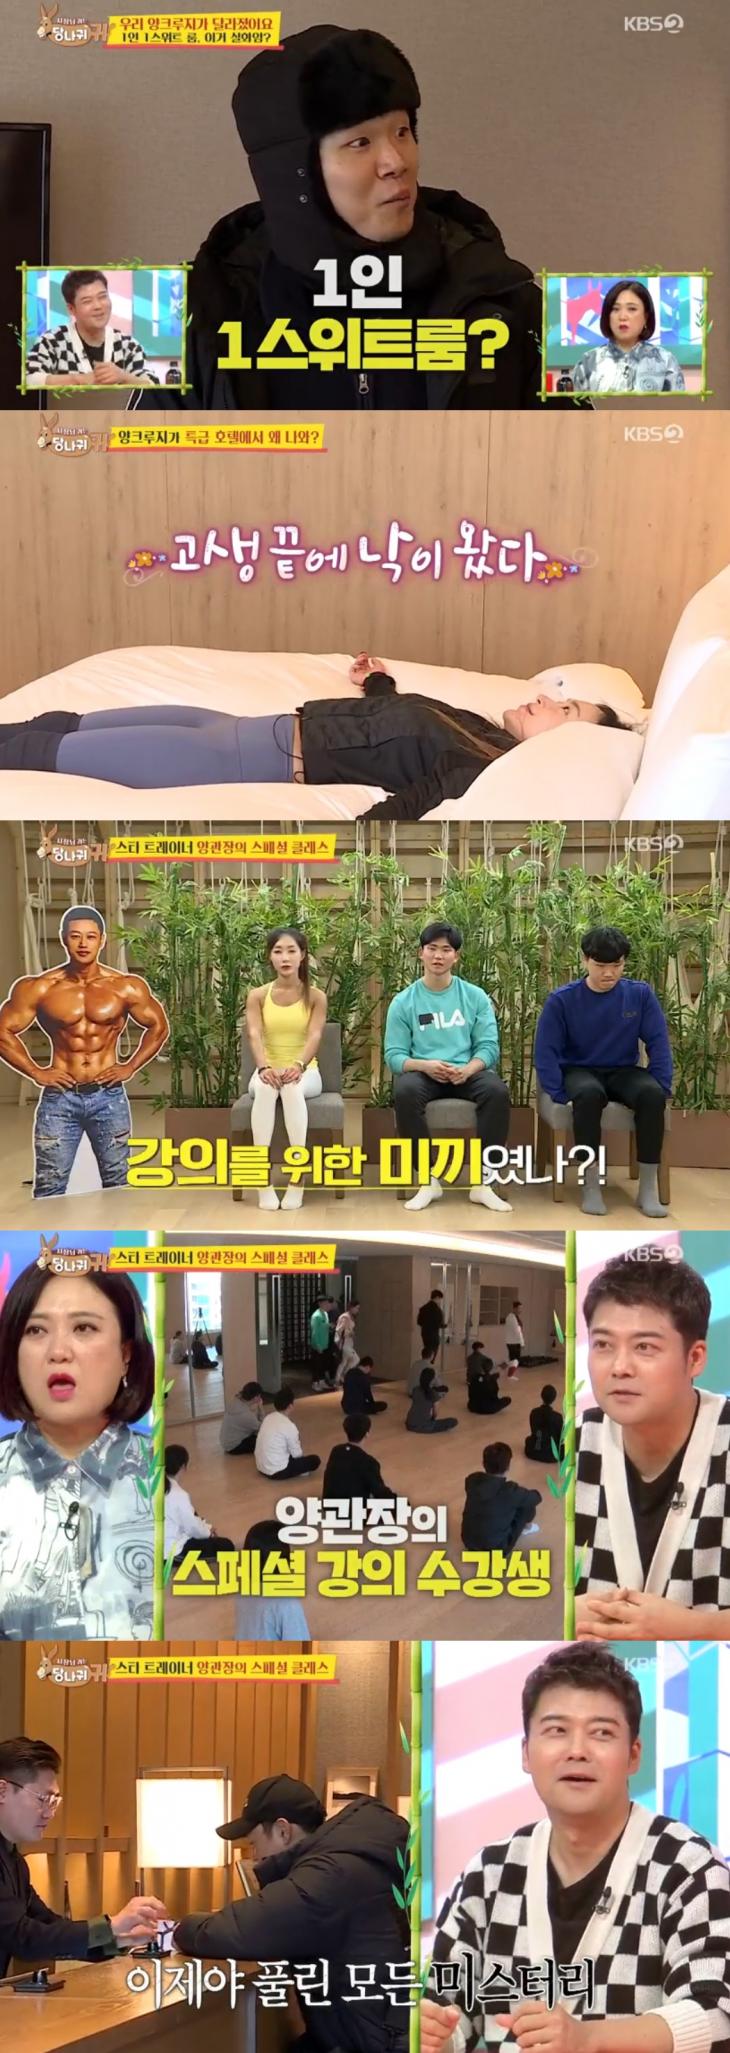 KBS2 예능프로그램 '사장님 귀는 당나귀 귀'